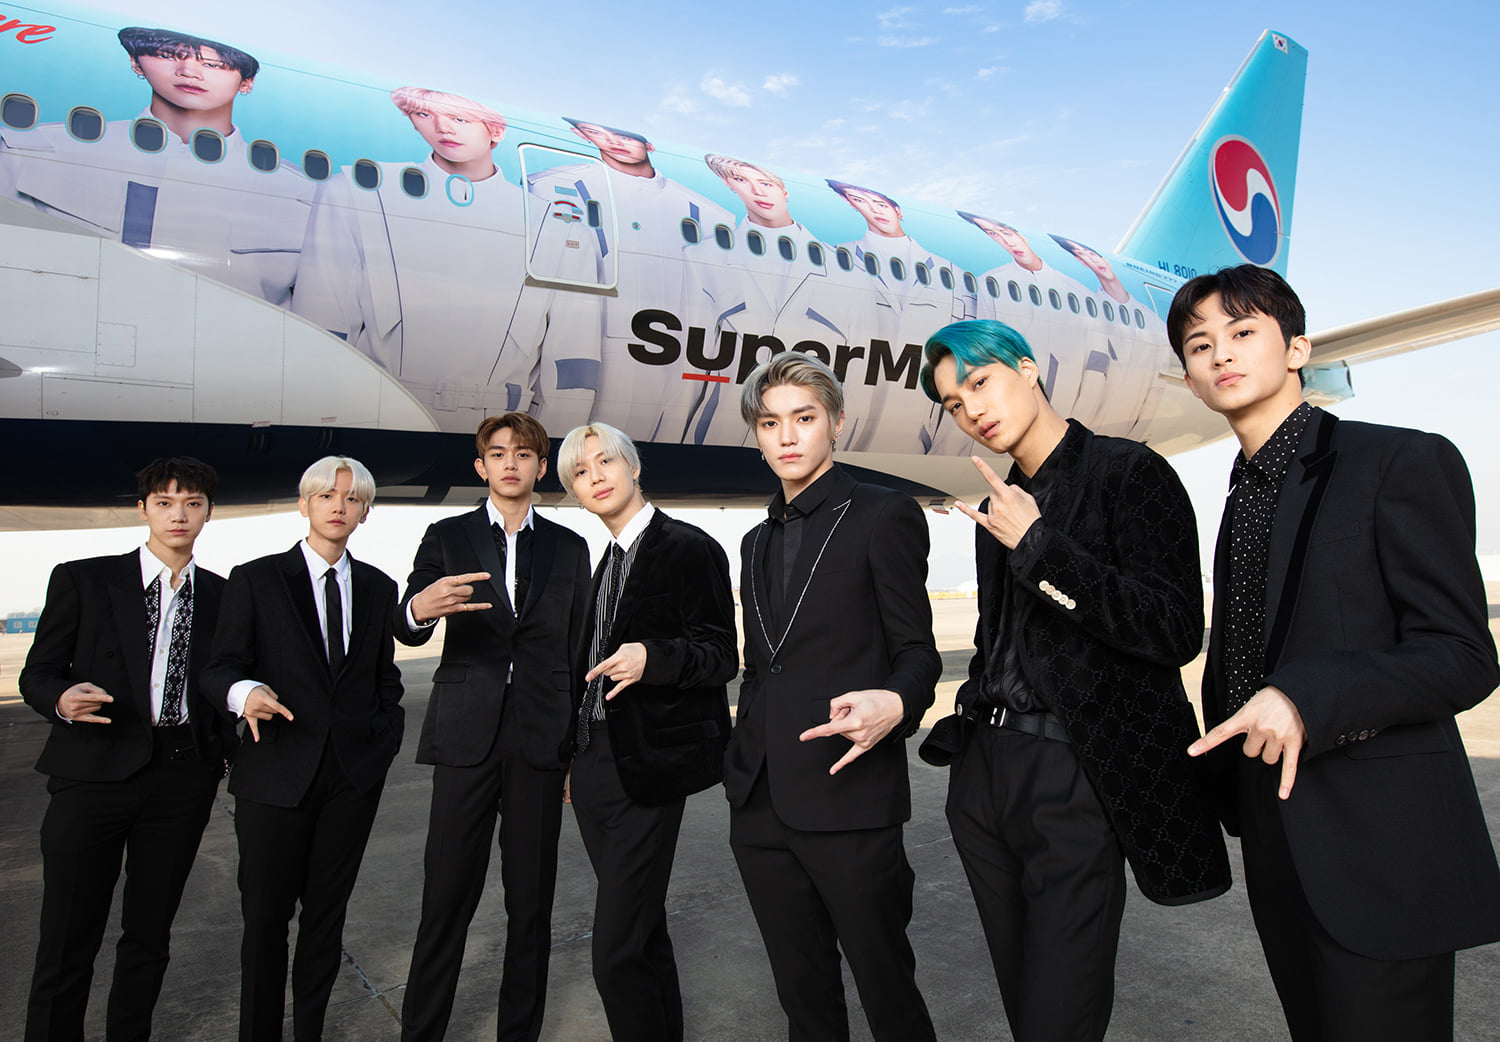 Super M became Ambassador of Korea Airline